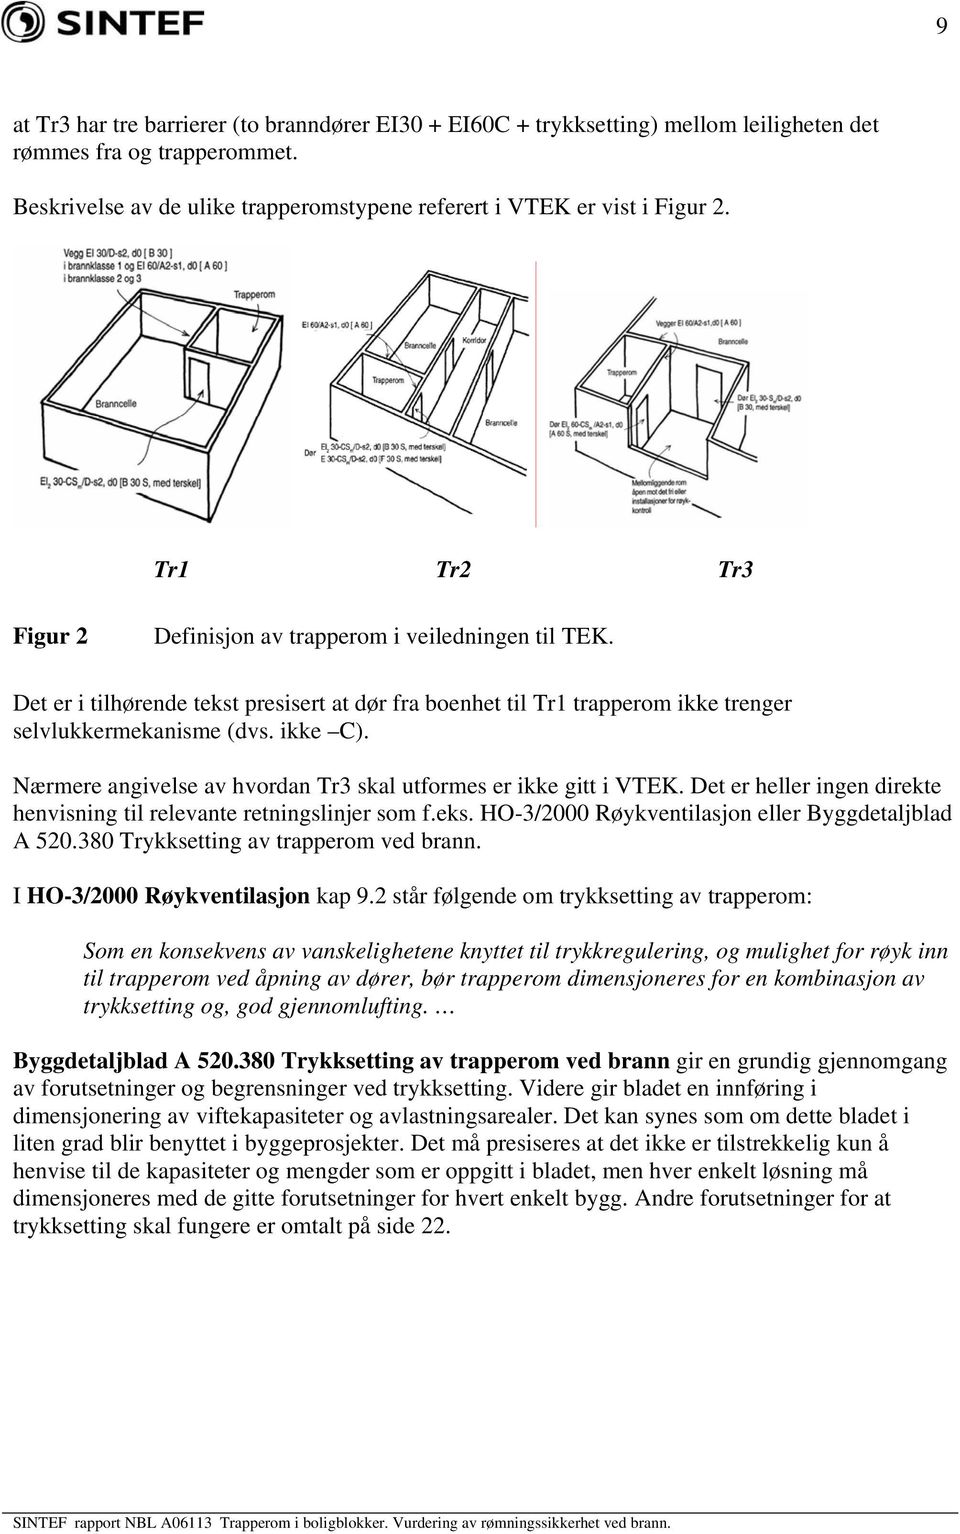 Nærmere angivelse av hvordan Tr3 skal utformes er ikke gitt i VTEK. Det er heller ingen direkte henvisning til relevante retningslinjer som f.eks. HO-3/2000 Røykventilasjon eller Byggdetaljblad A 520.